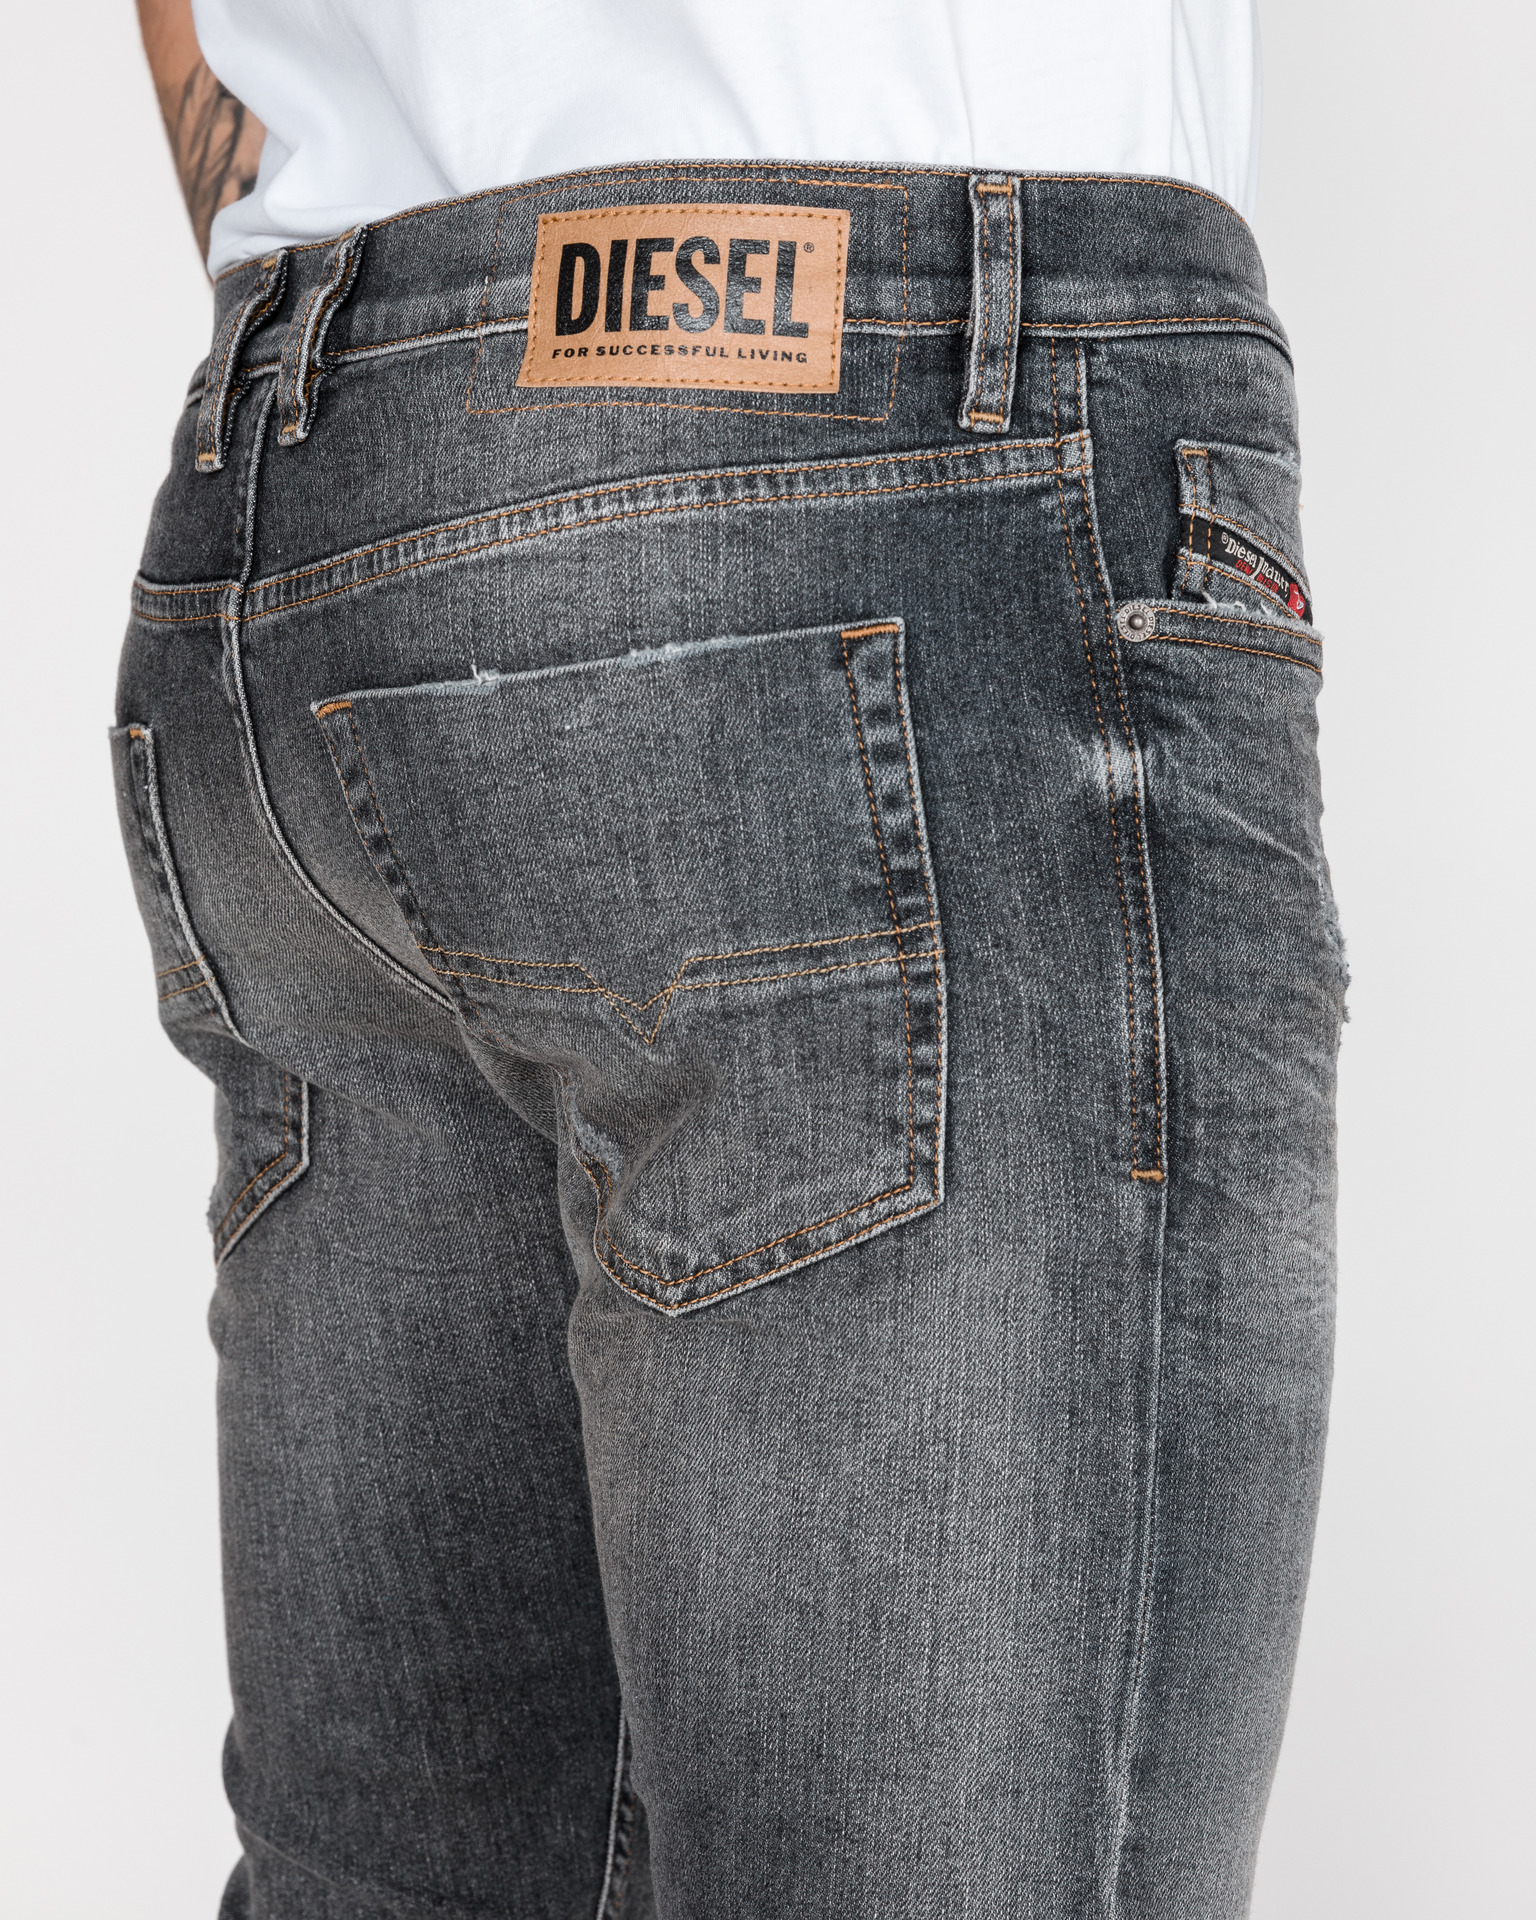 Deqenereret De er dette Diesel - Tepphar Jeans Bibloo.com